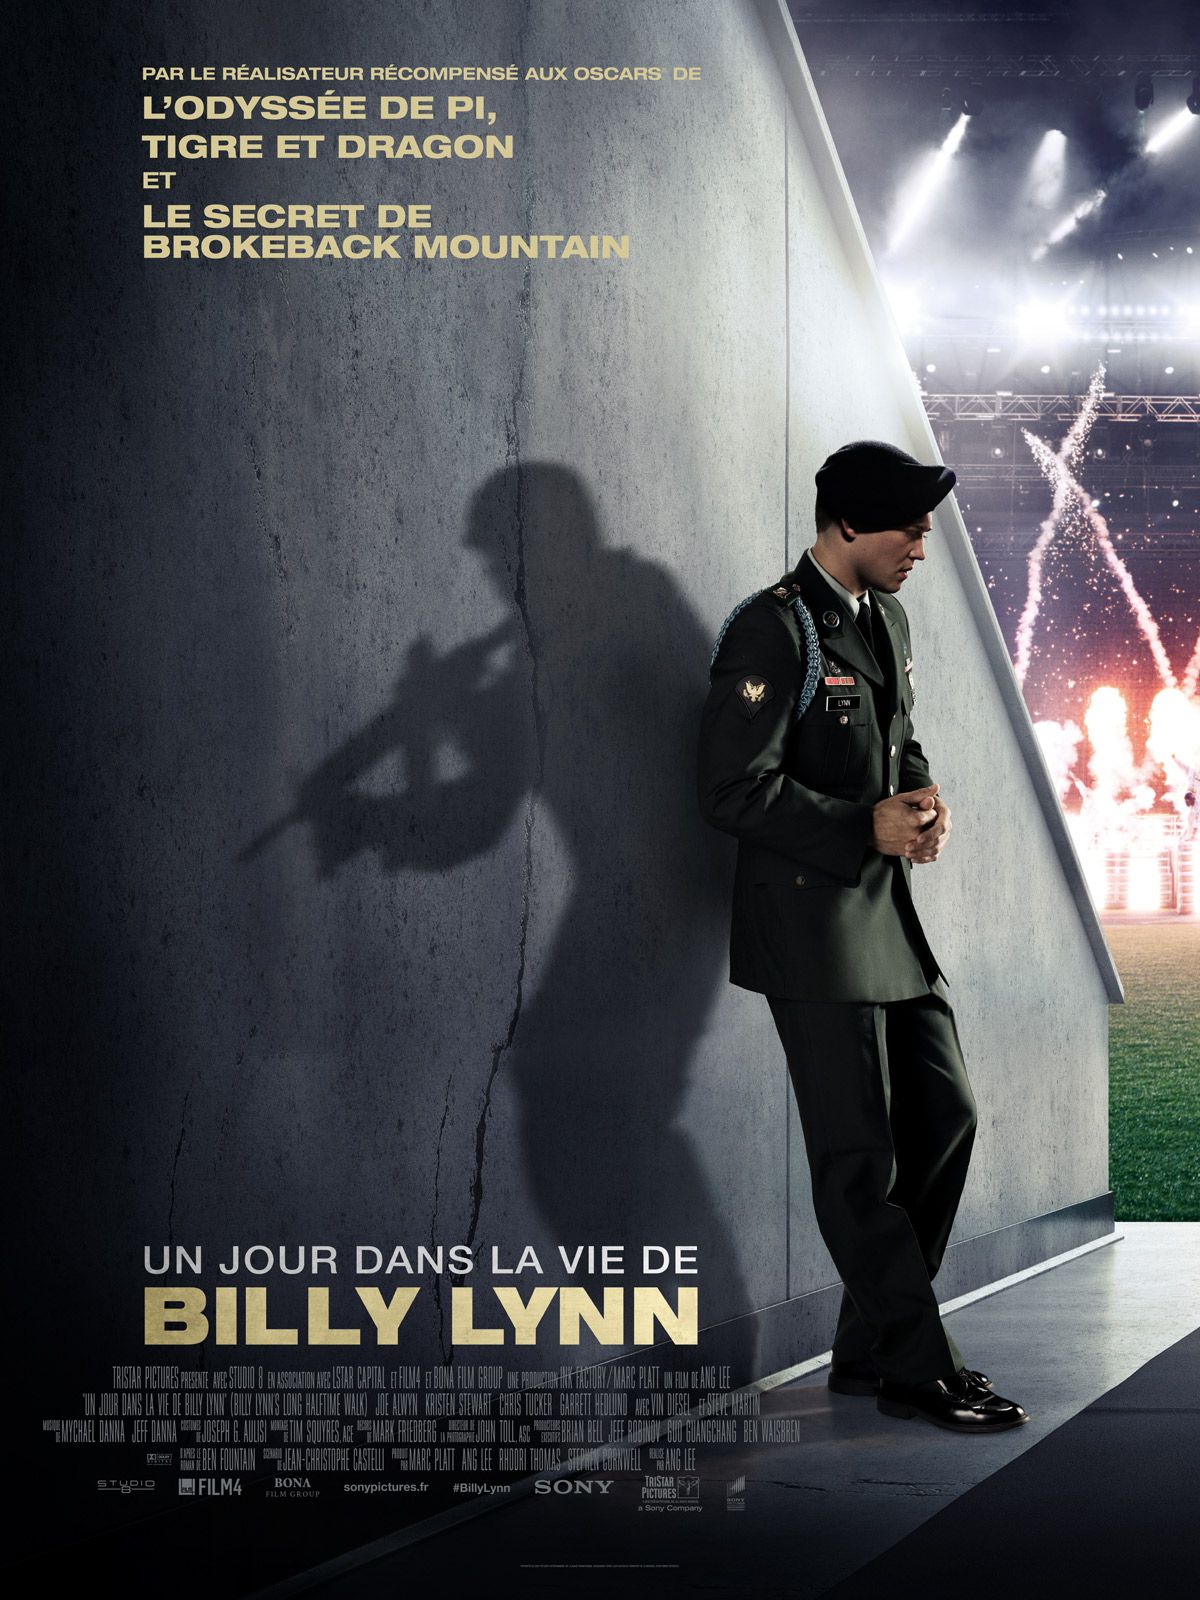 Un jour dans la vie de Billy Lynn - Film (2016) streaming VF gratuit complet